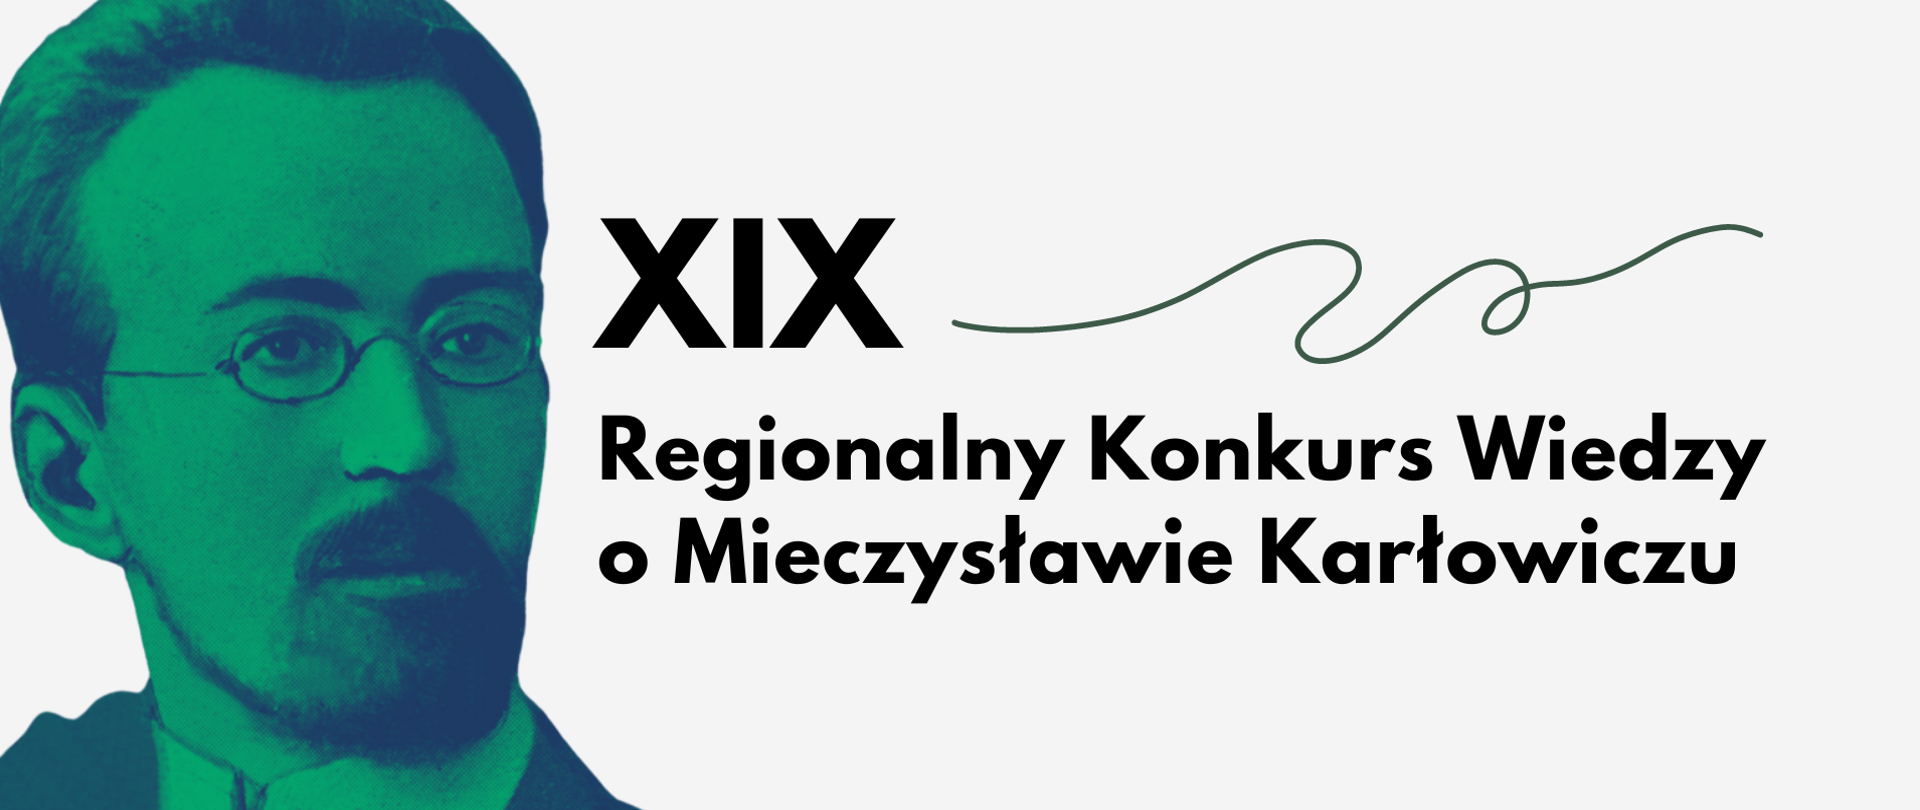 Zdjęcie Mieczysława Karłowicza i napisz XIX Regionalny Konkurs Wiedzy o Mieczysławie Karłowiczu